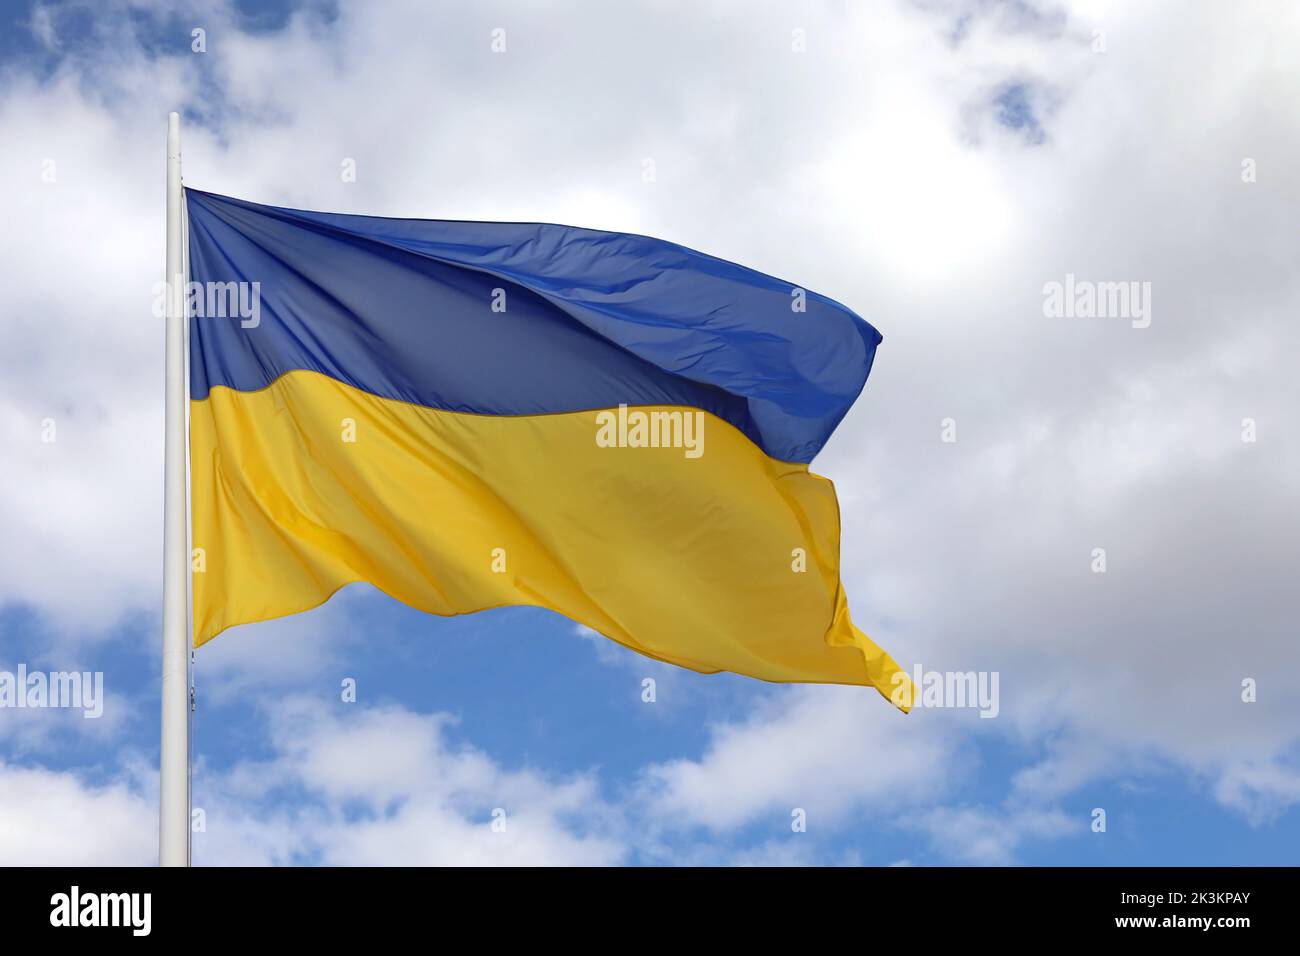 gran bandera ucraniana en el cielo azul con colores azules y amarillos Foto de stock